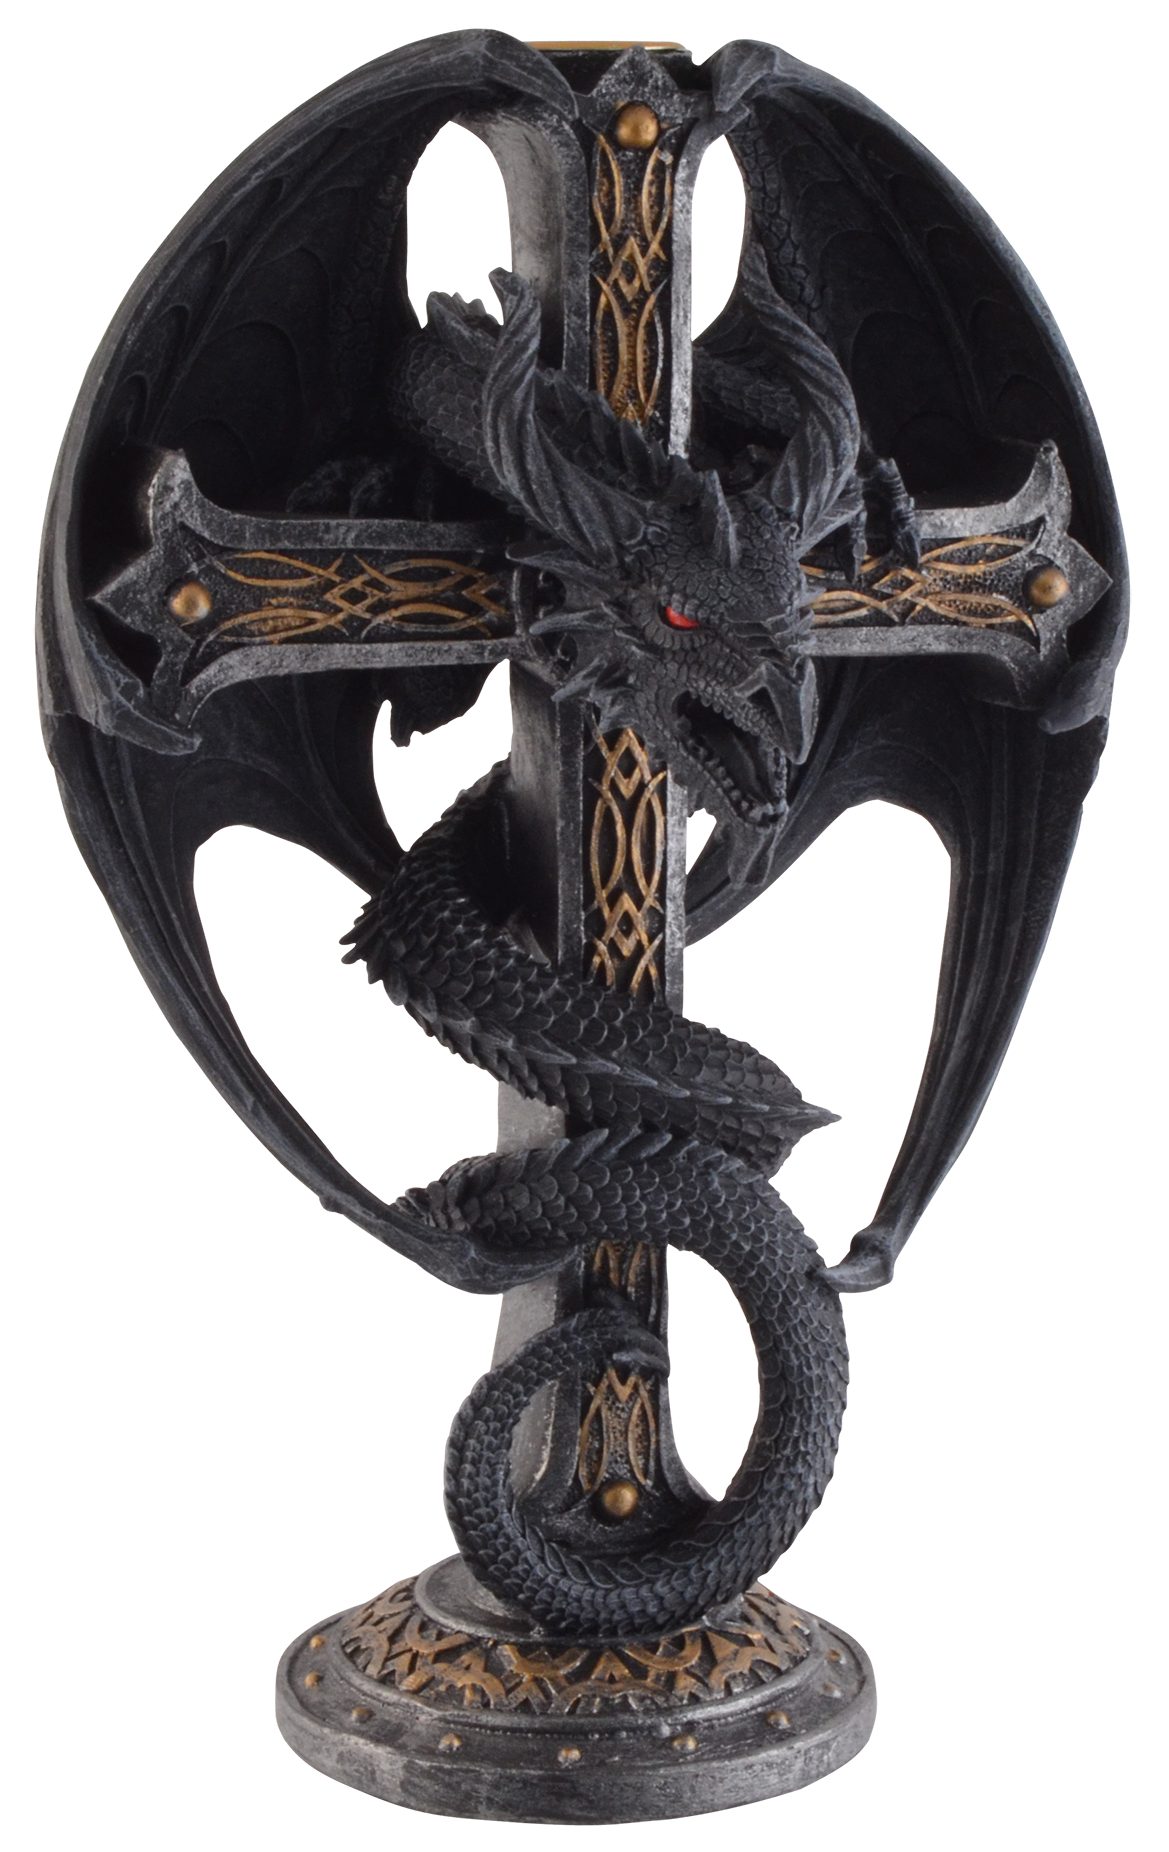 Vogler direct Gmbh Kerzenleuchter Kerzenleuchter "Dragon Cross", aus Kunststein, Größe: LxBxH ca. 16x12x26 cm